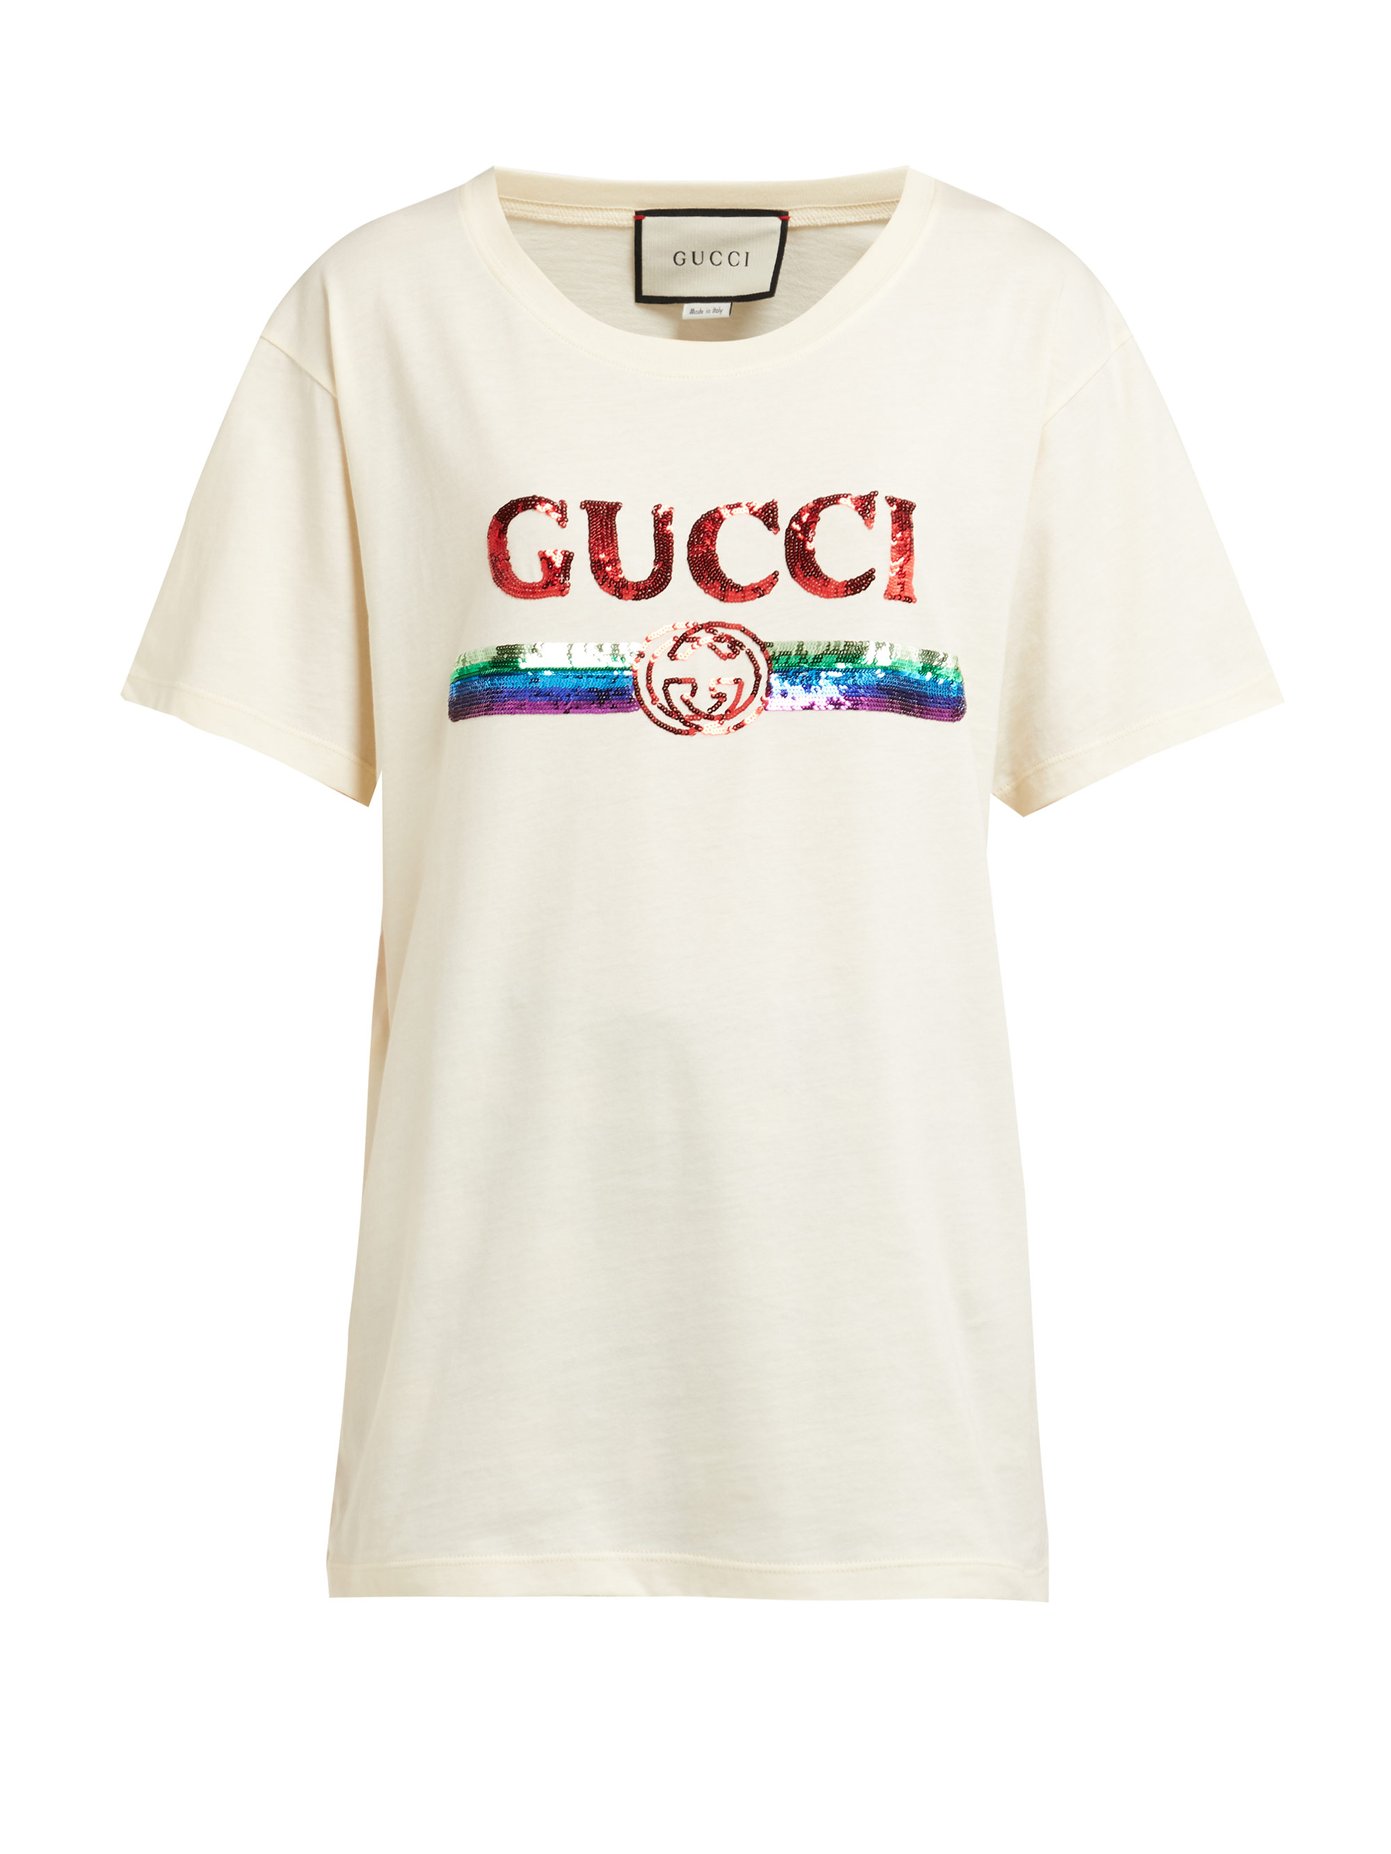 gucci tshirt on sale